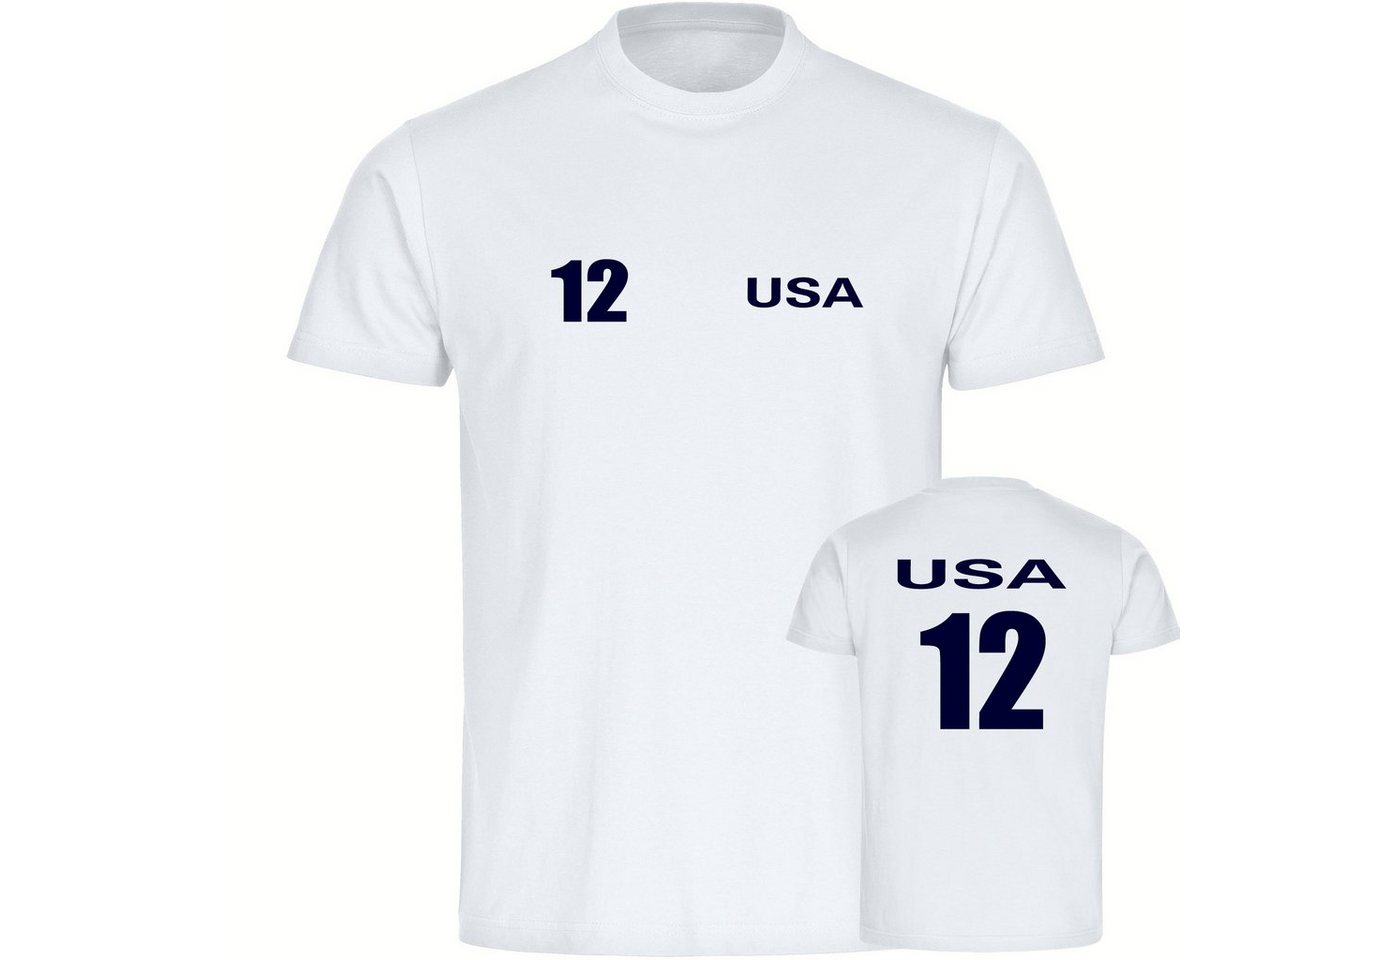 multifanshop T-Shirt Kinder USA - Trikot 12 - Jungen Mädchen Shirt Fanartikel von multifanshop